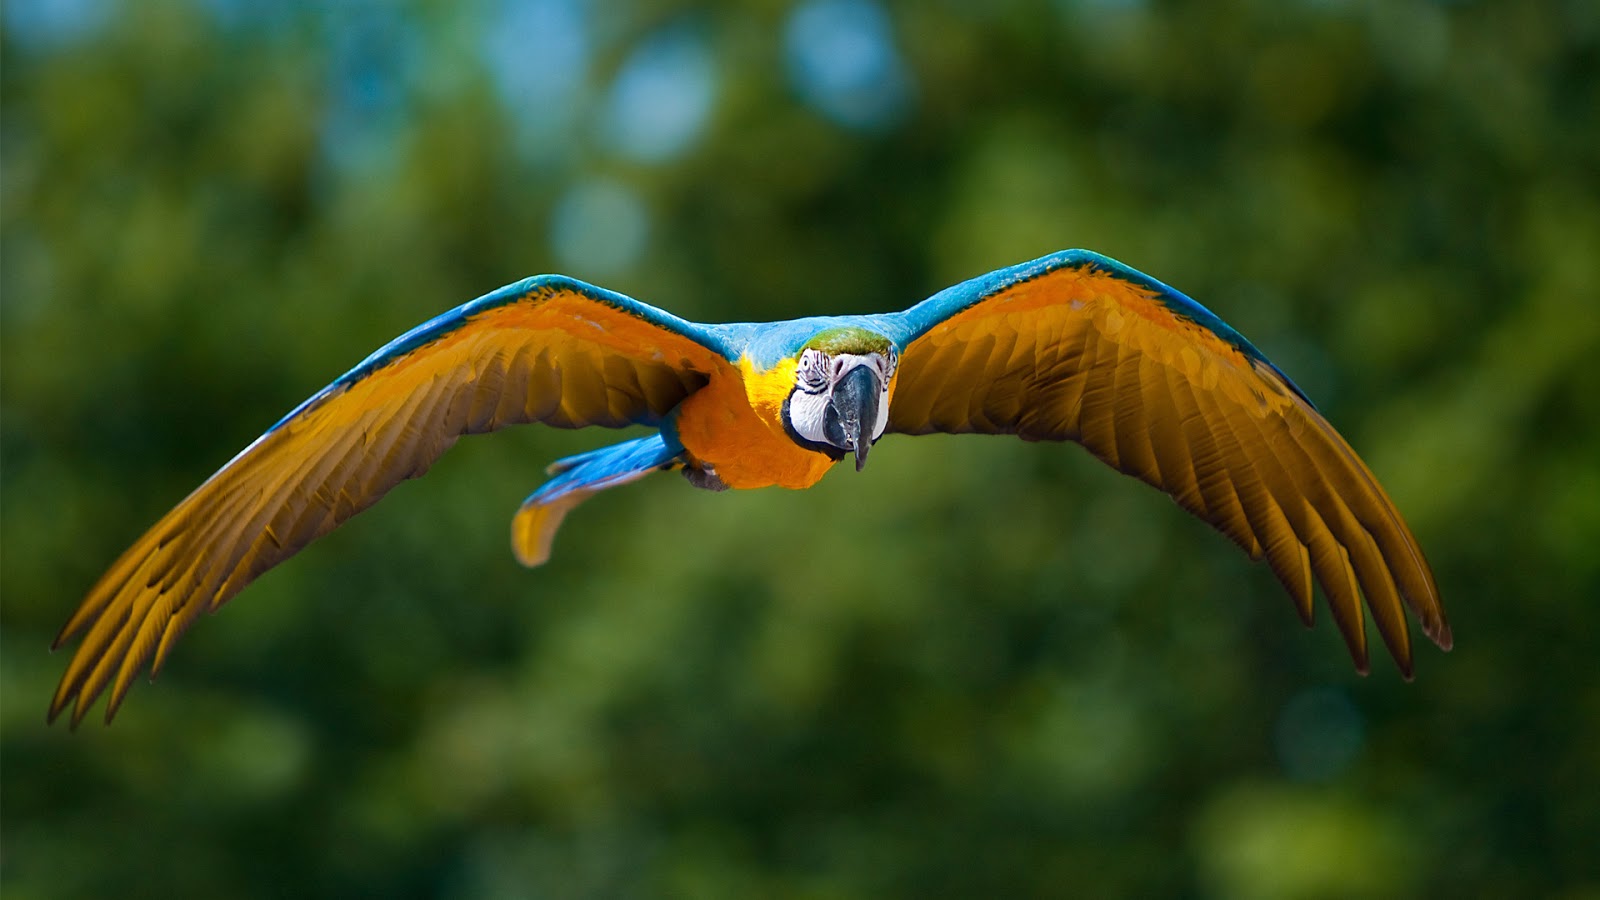 Macaw Parrot Sky Image   SA Wallpapers